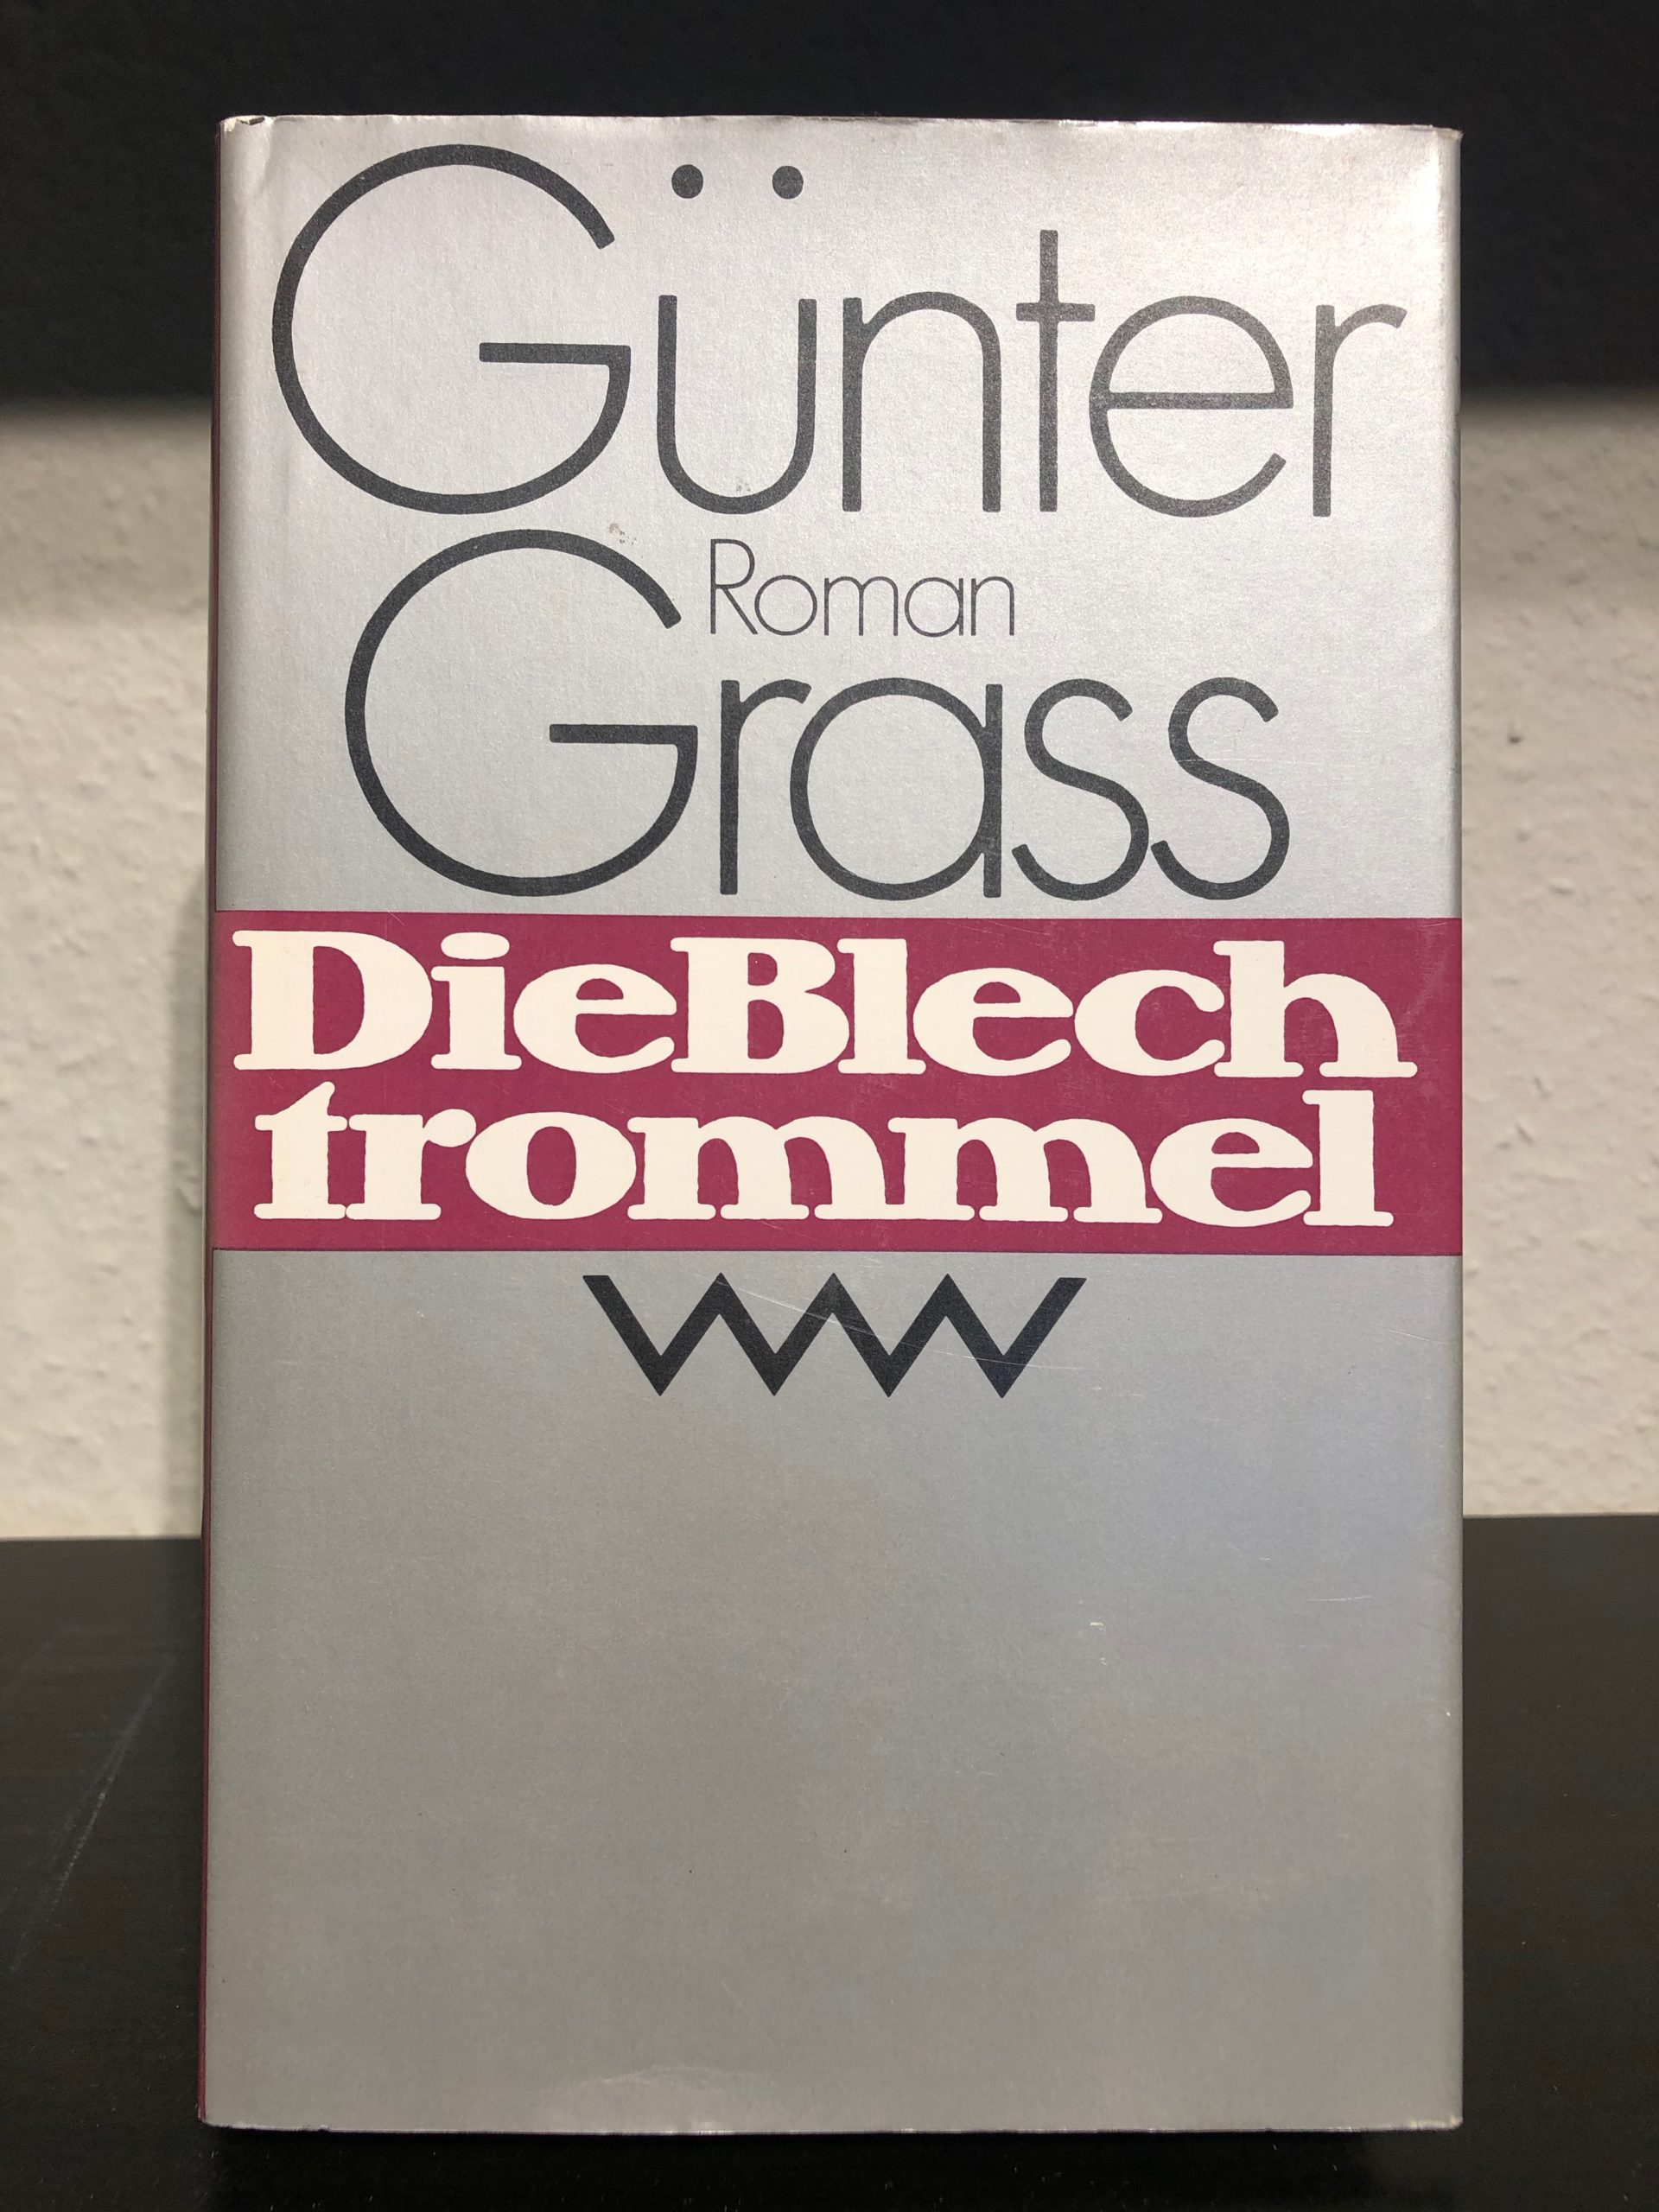 Die Blechtrommel - Günter Grass main image